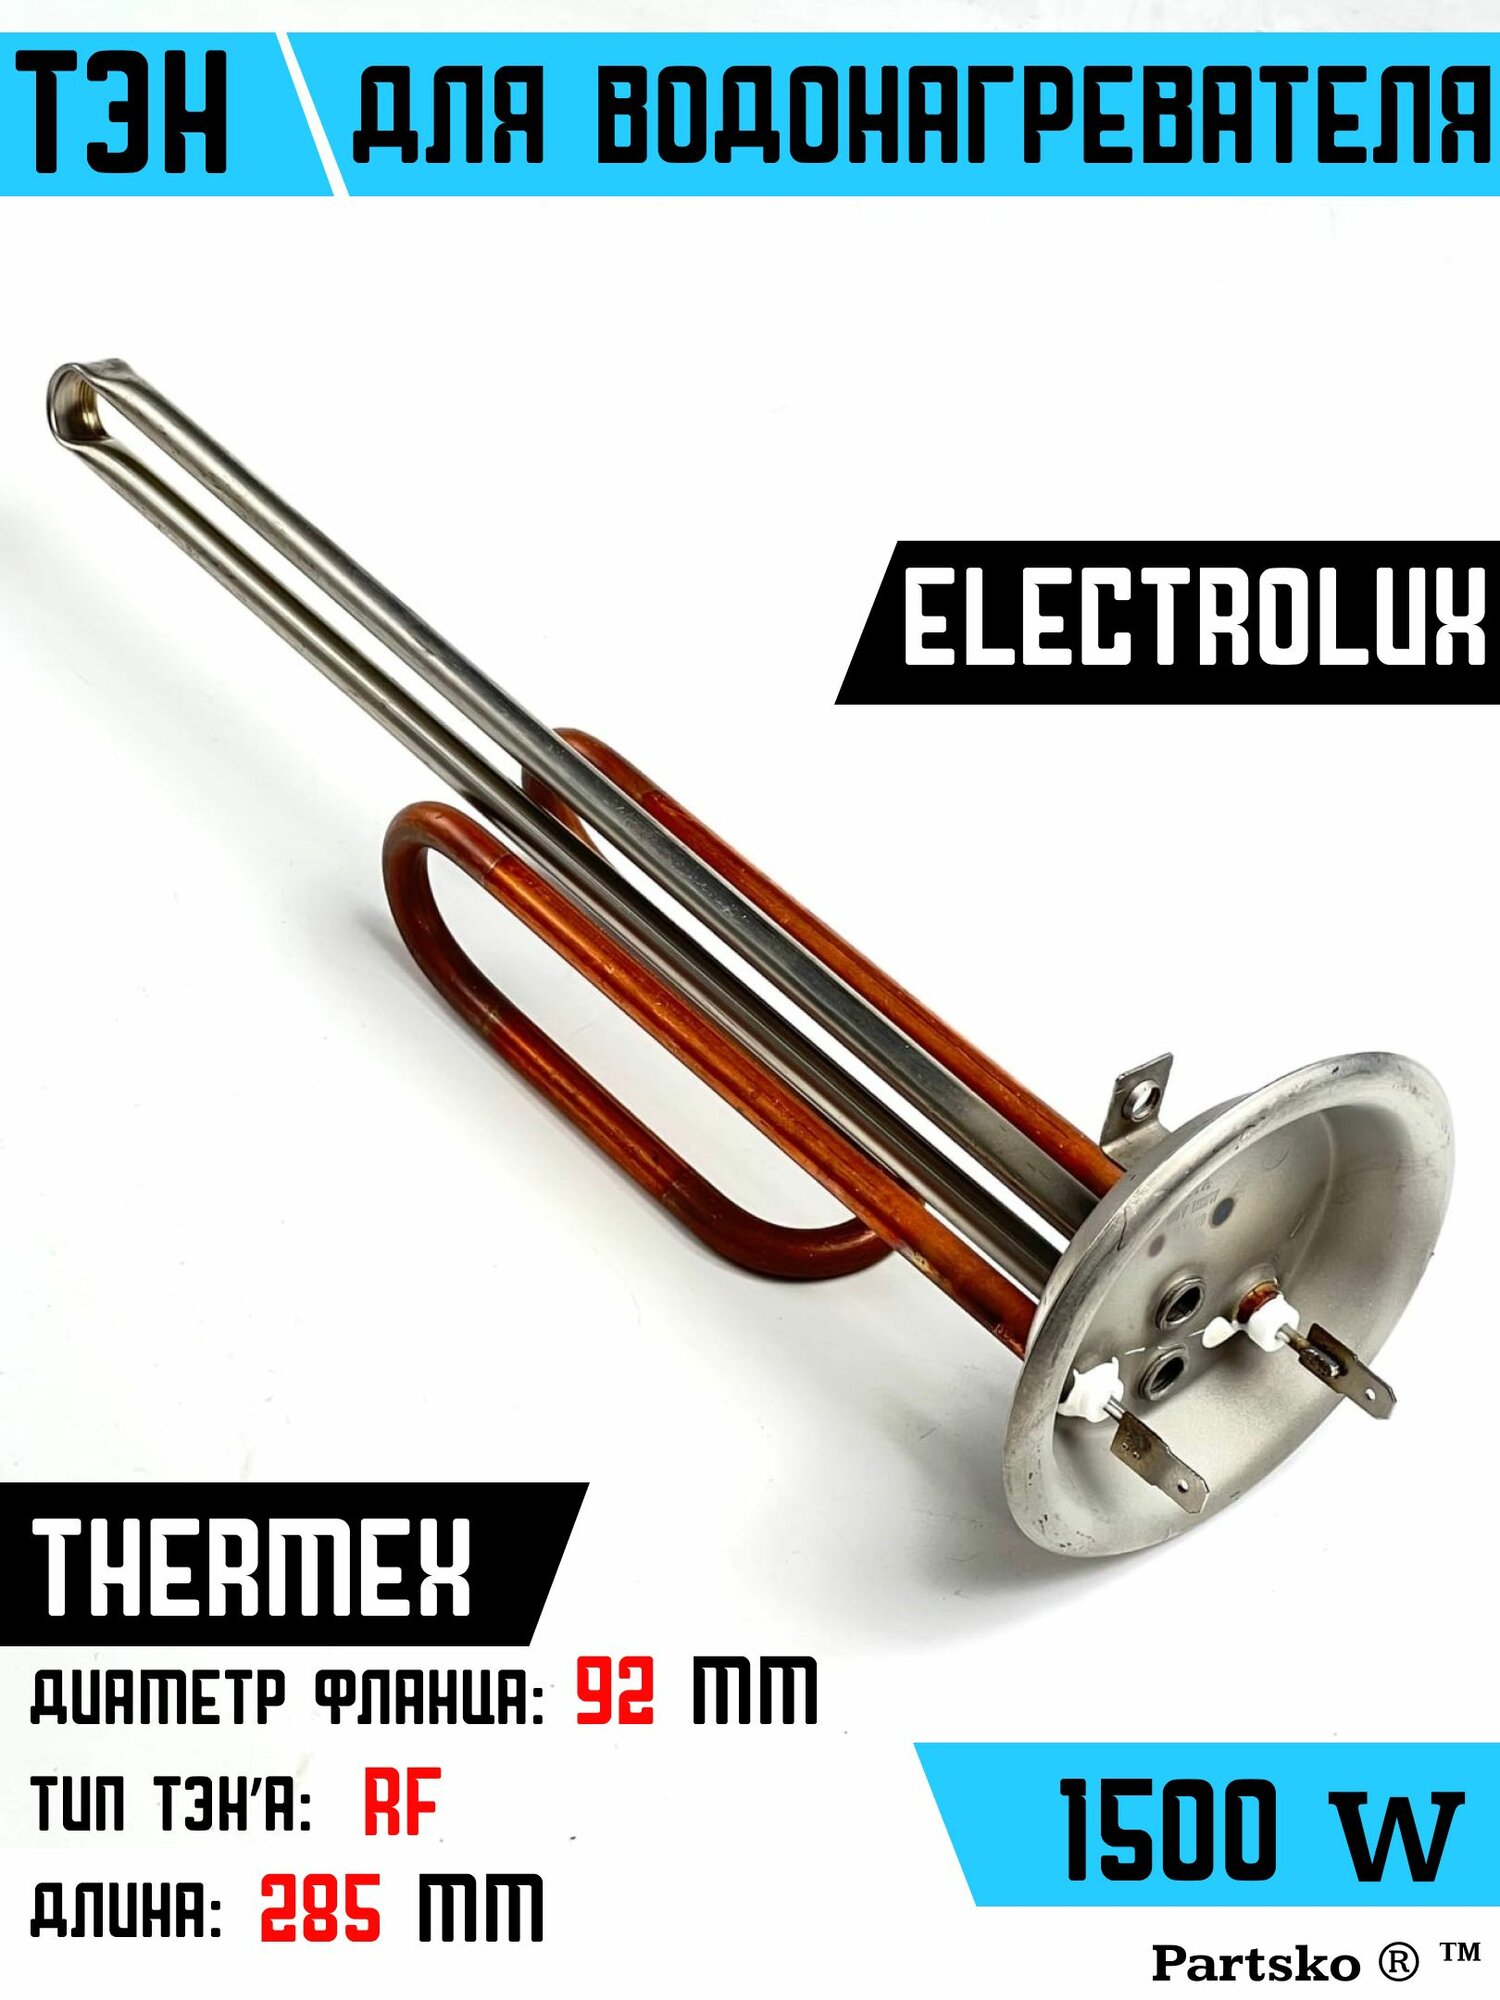 ТЭН для водонагревателя Thermex Electrolux. 1500W, L285мм, М6, медь, фланец 92 мм. Для котла отопления бойлеров самогонных аппаратов. Для Термекс Электролюкс